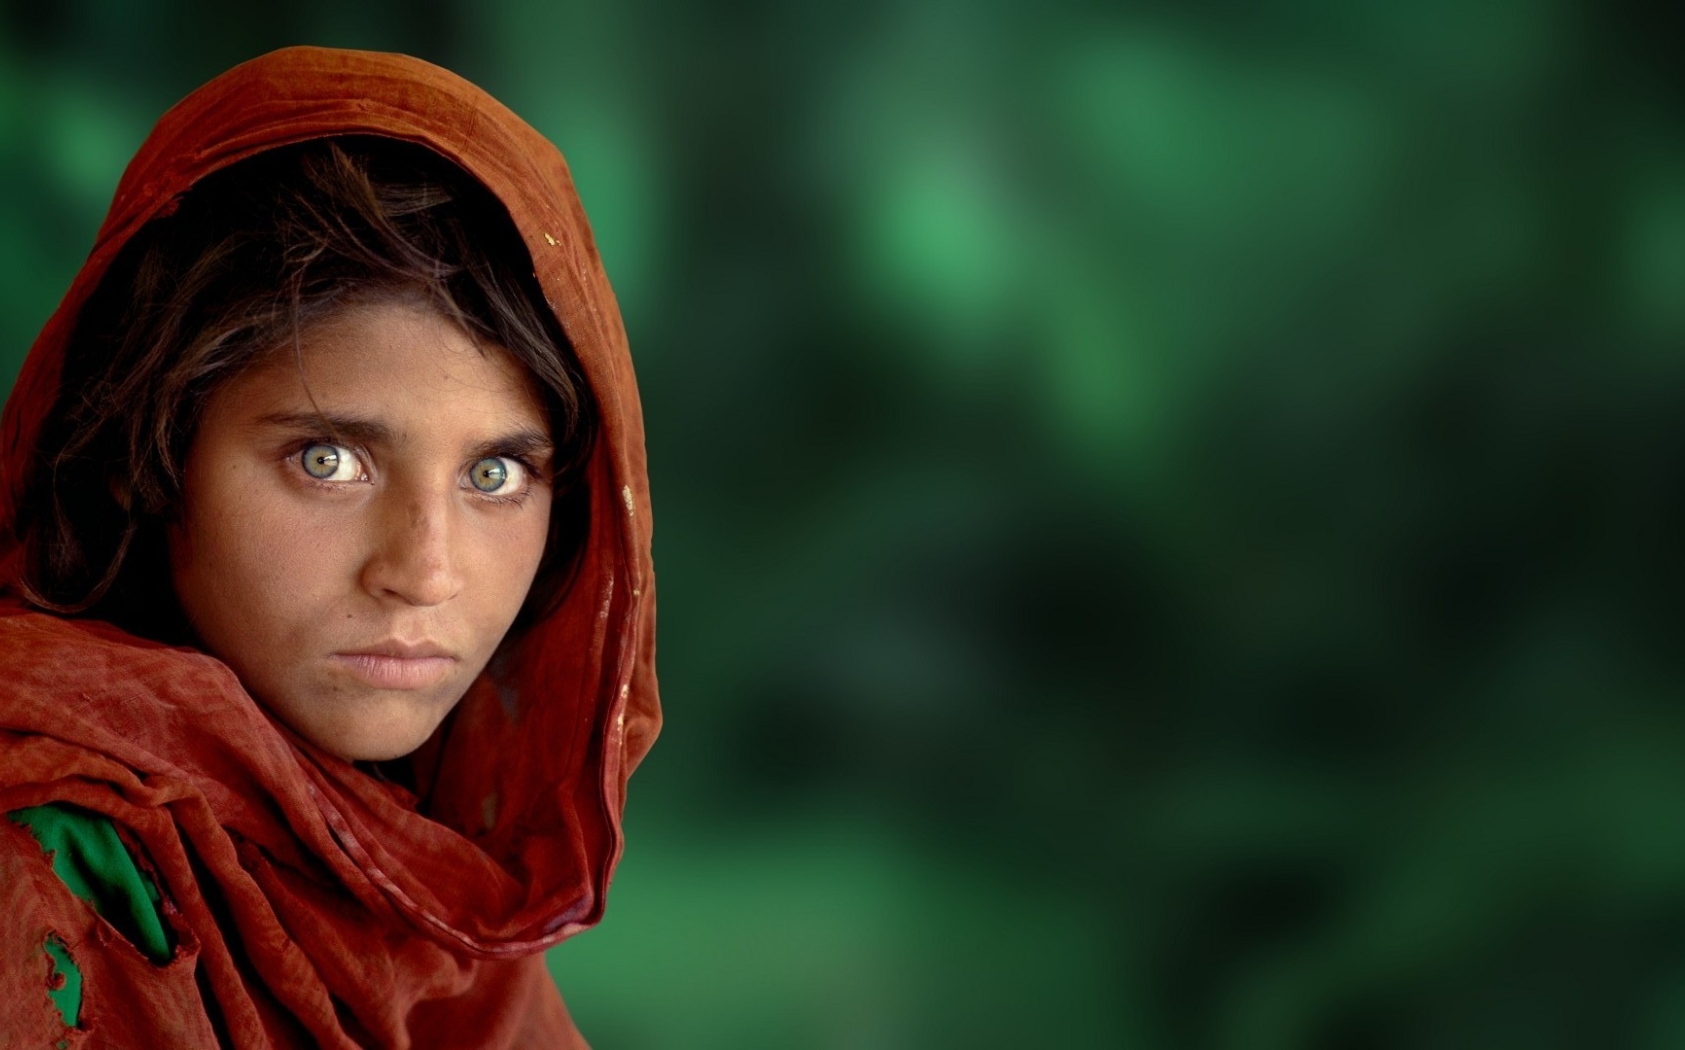 Afghan Girl Photo Wallpaper And Image